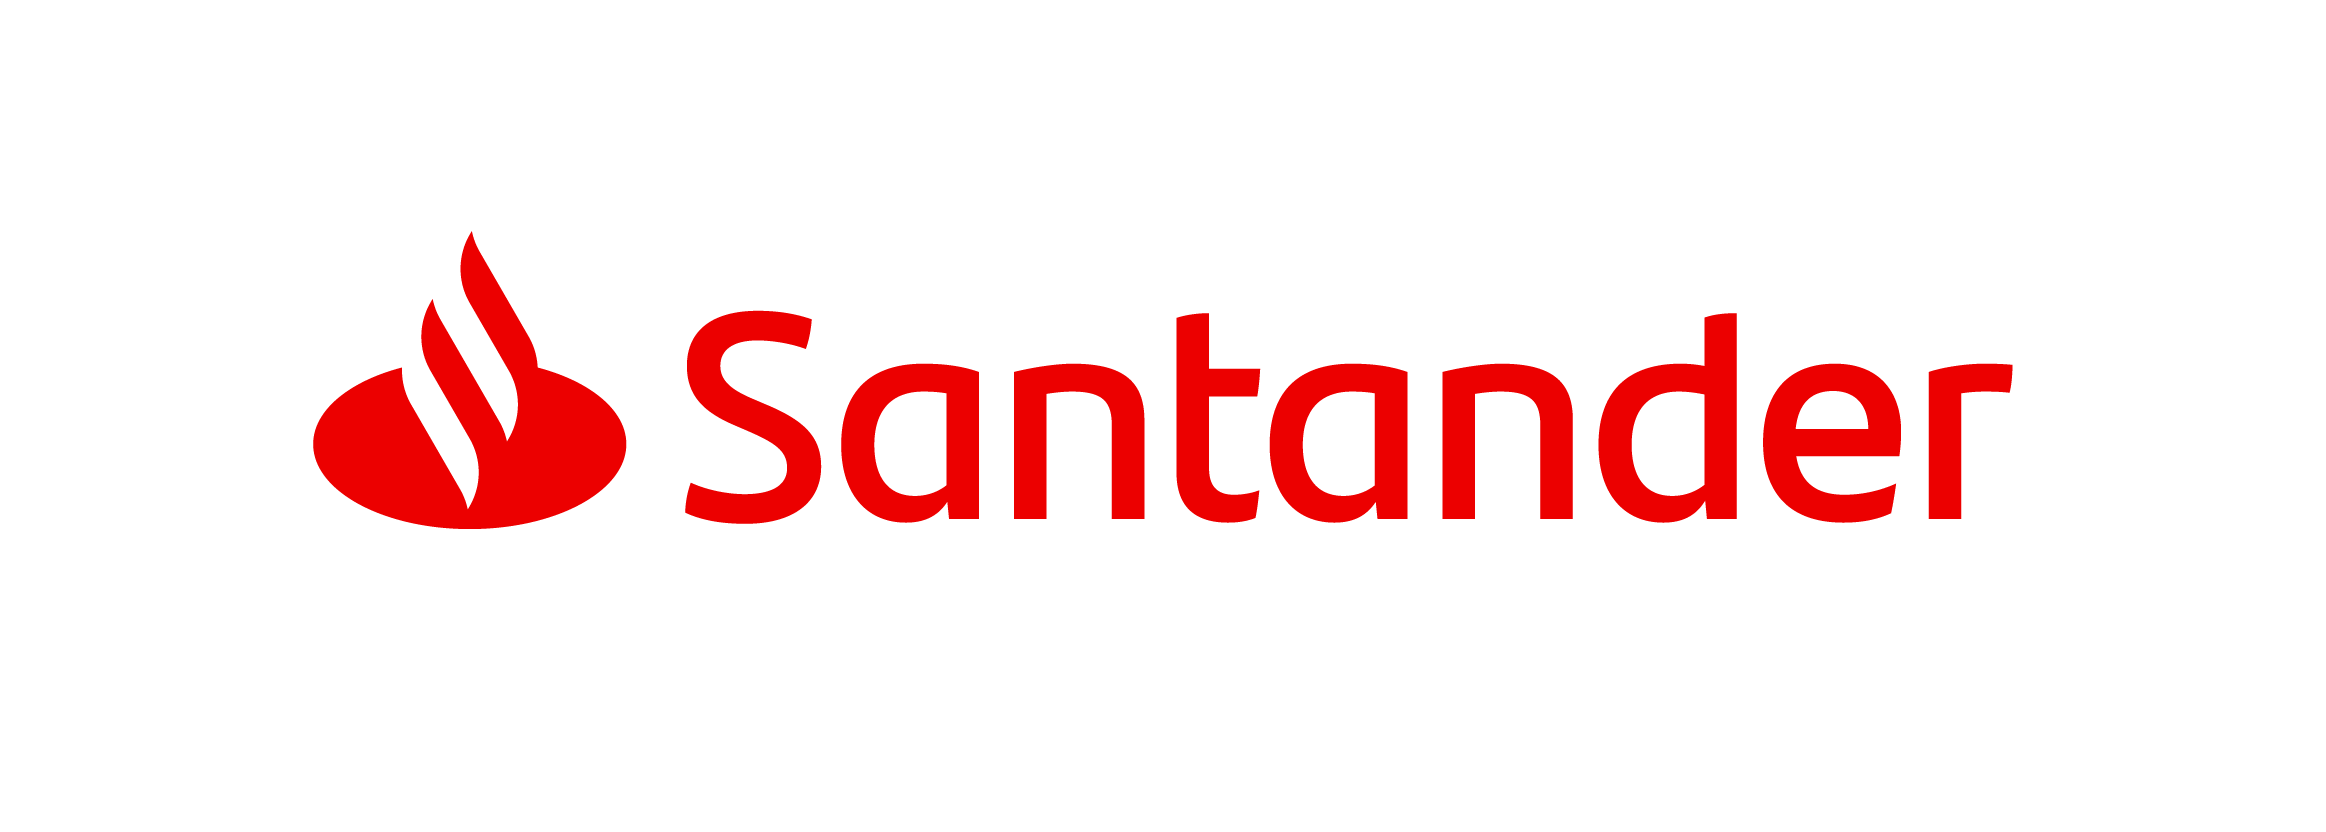 Santander für Reparaturfinanzierung Logo